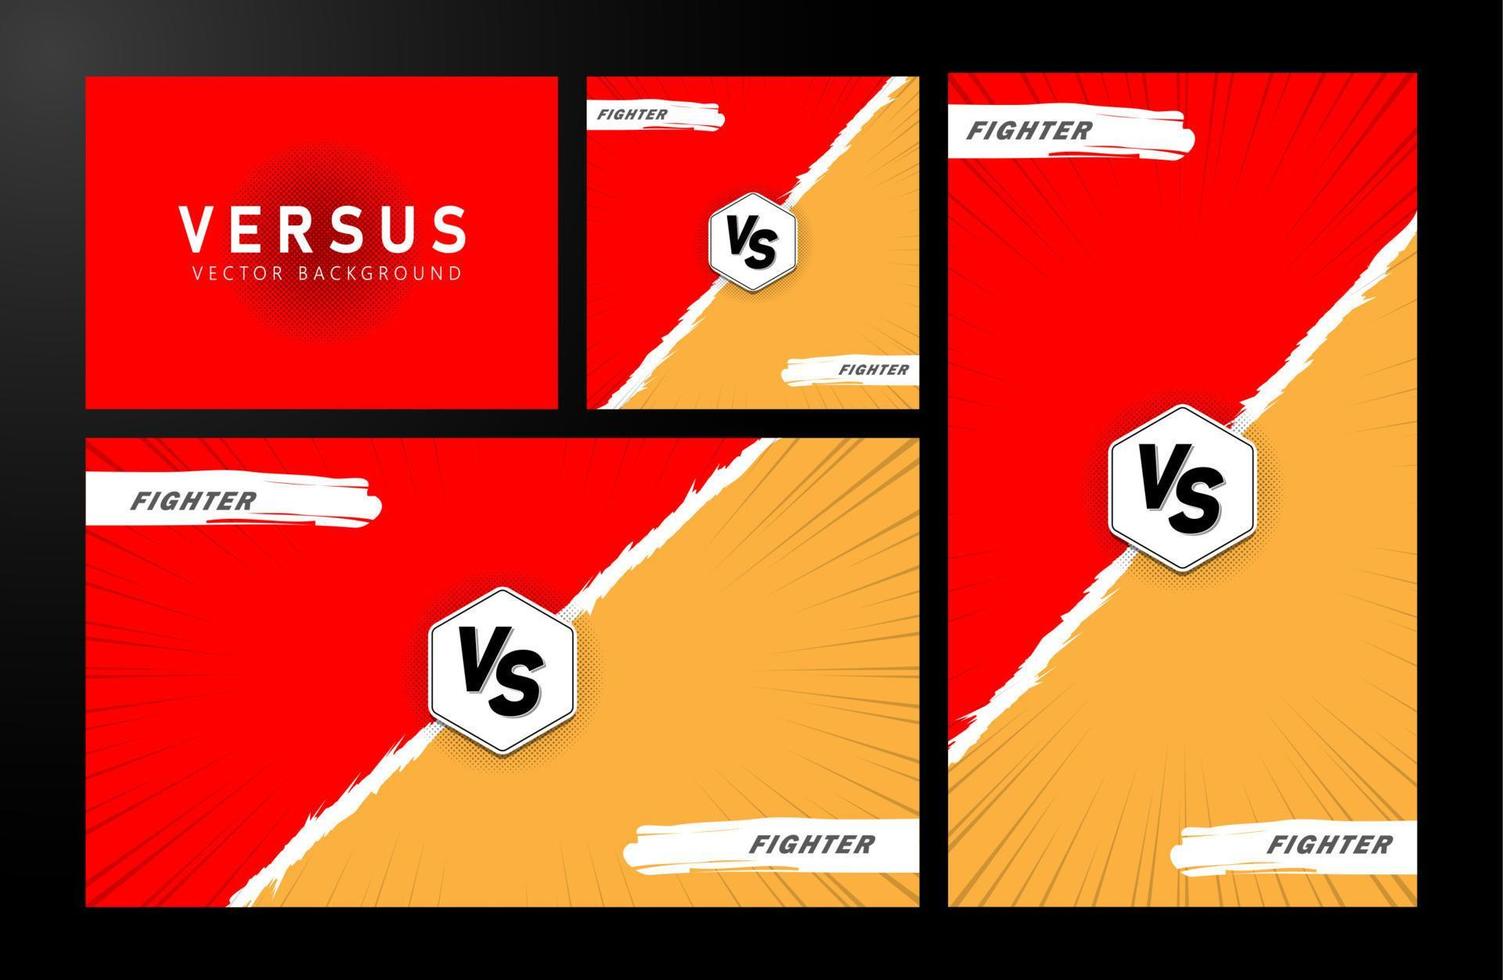 VS Versus Battle Fight Background Social Media Post. Landscape, Portrait, Square ratio. vector